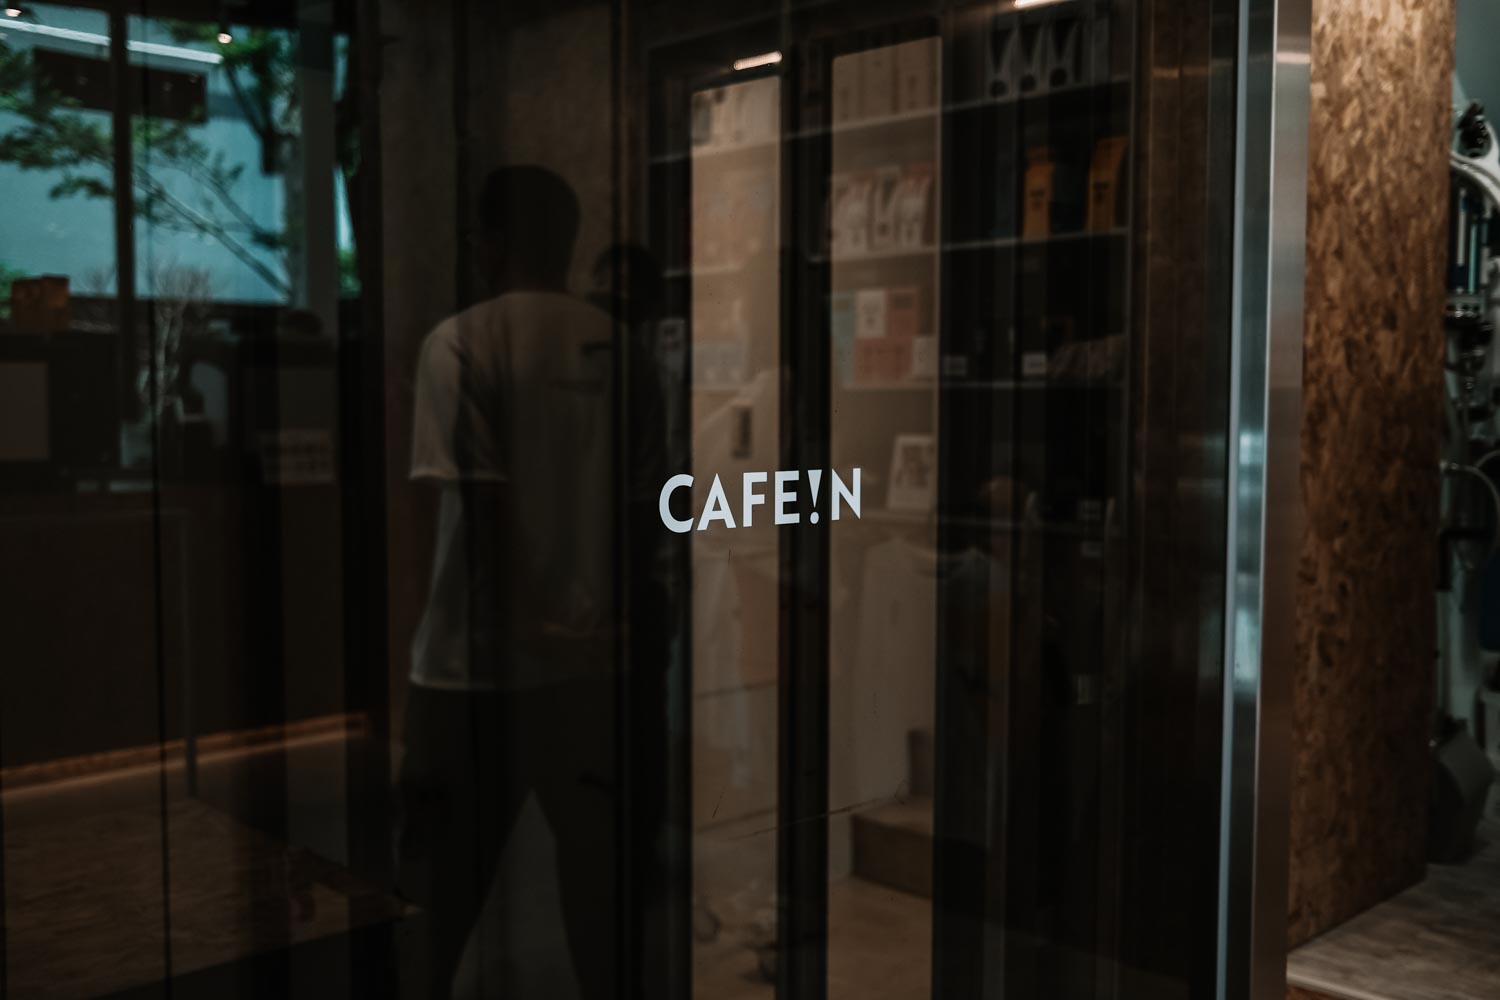 CAFE!N 硬咖啡 新竹關新店環境介紹